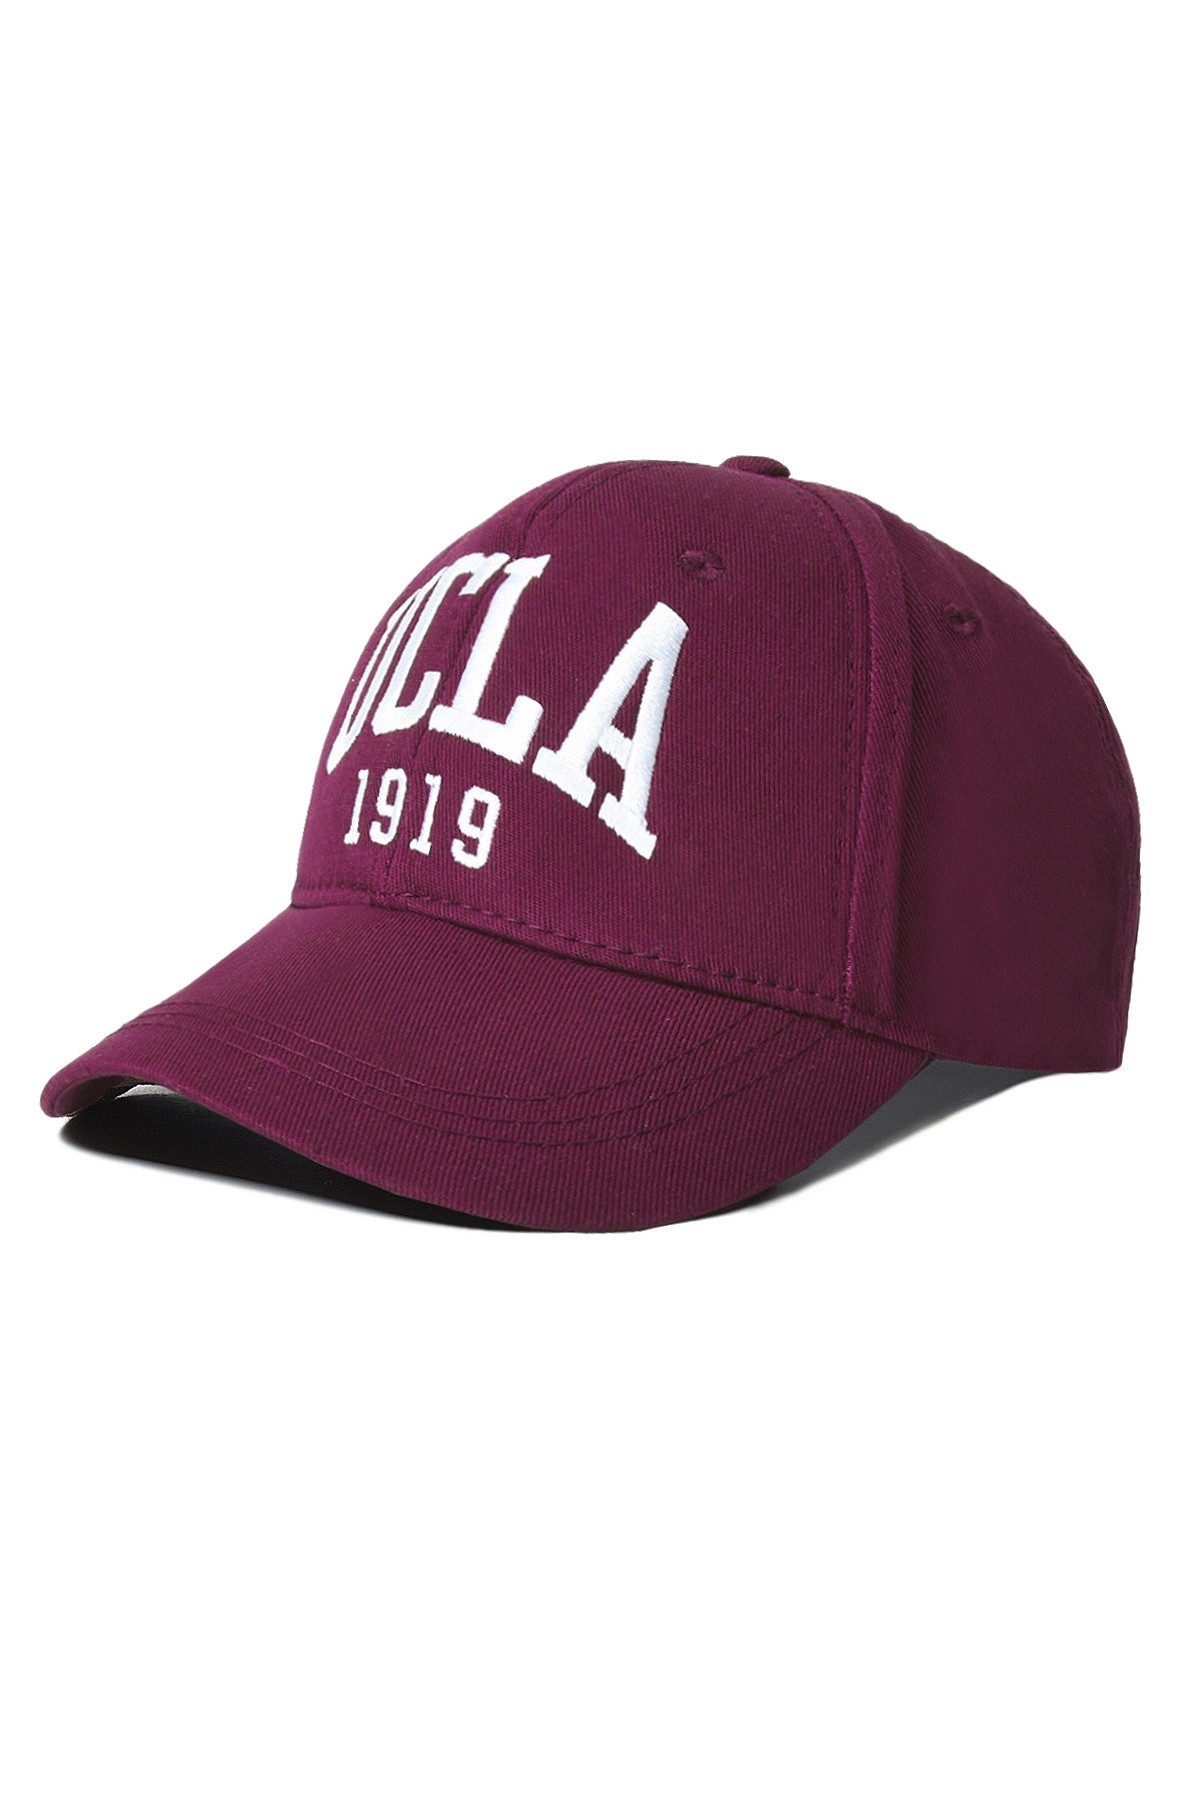 BALLARD Bordo Baseball Cap Nakışlı - Unisex Şapka